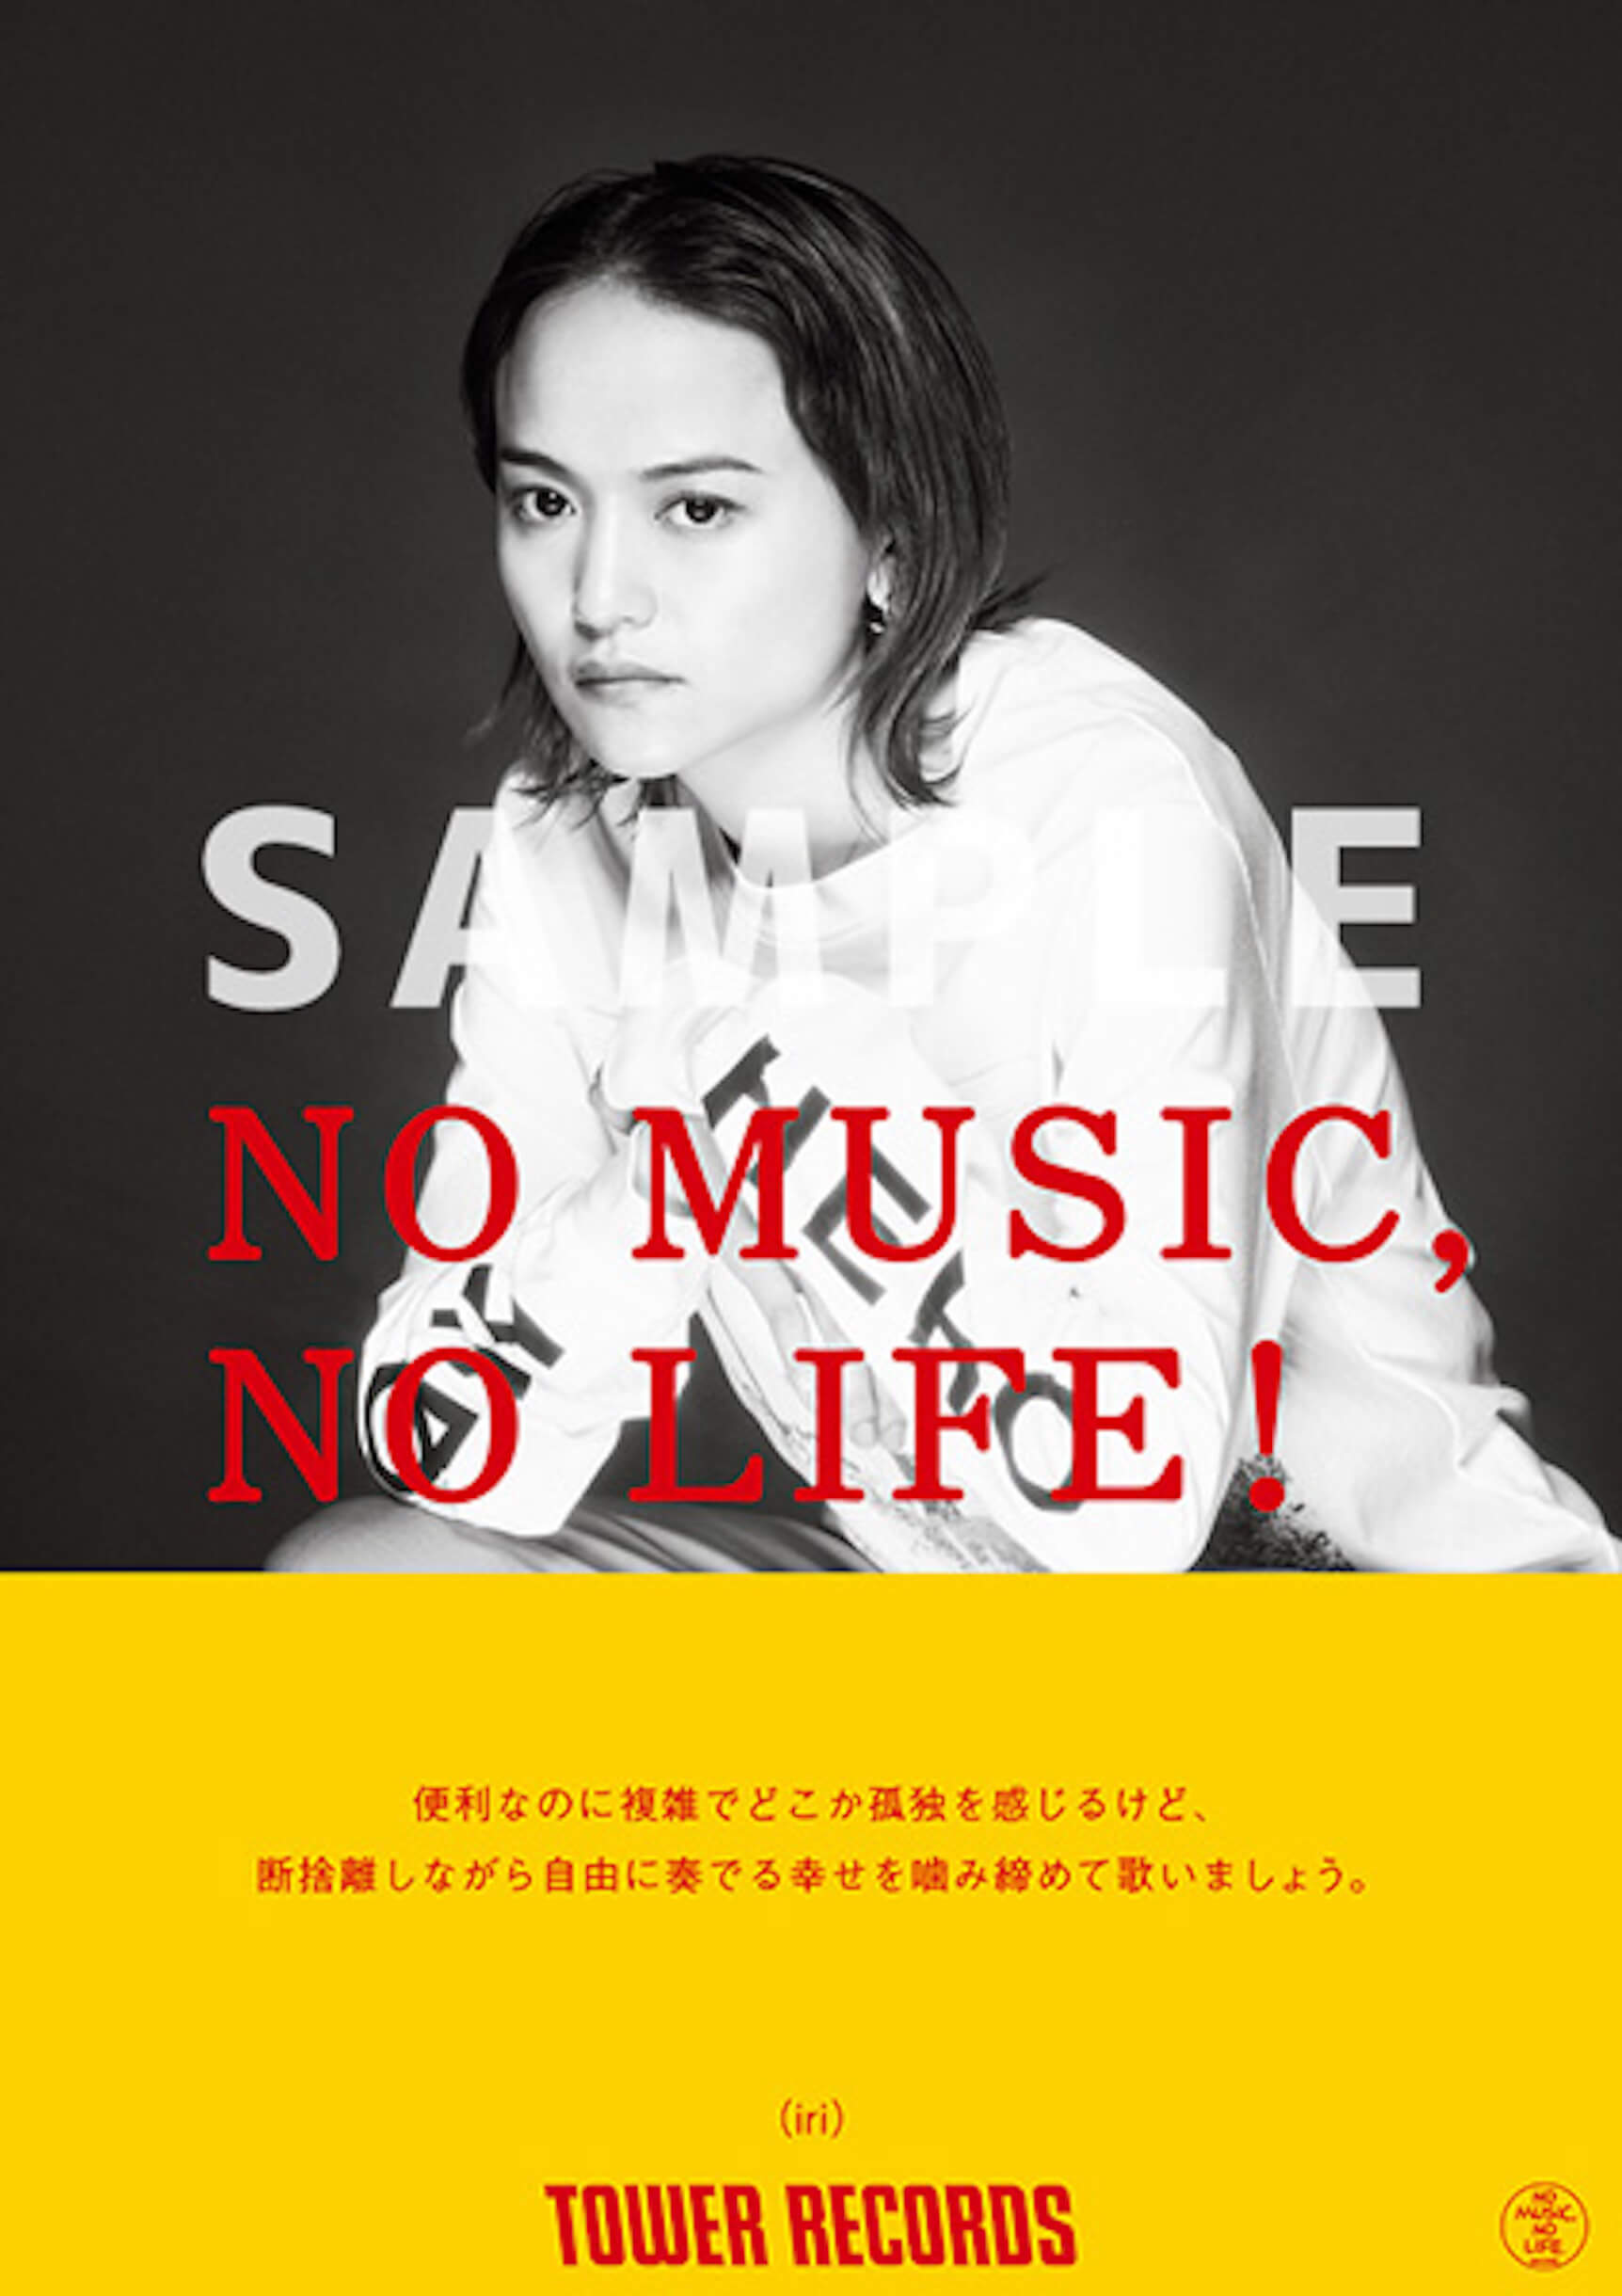 iriと竹内アンナが「NO MUSIC, NO LIFE.」に初登場！タワレコ限定アルバム購入特典も music220216_towerrecords-01